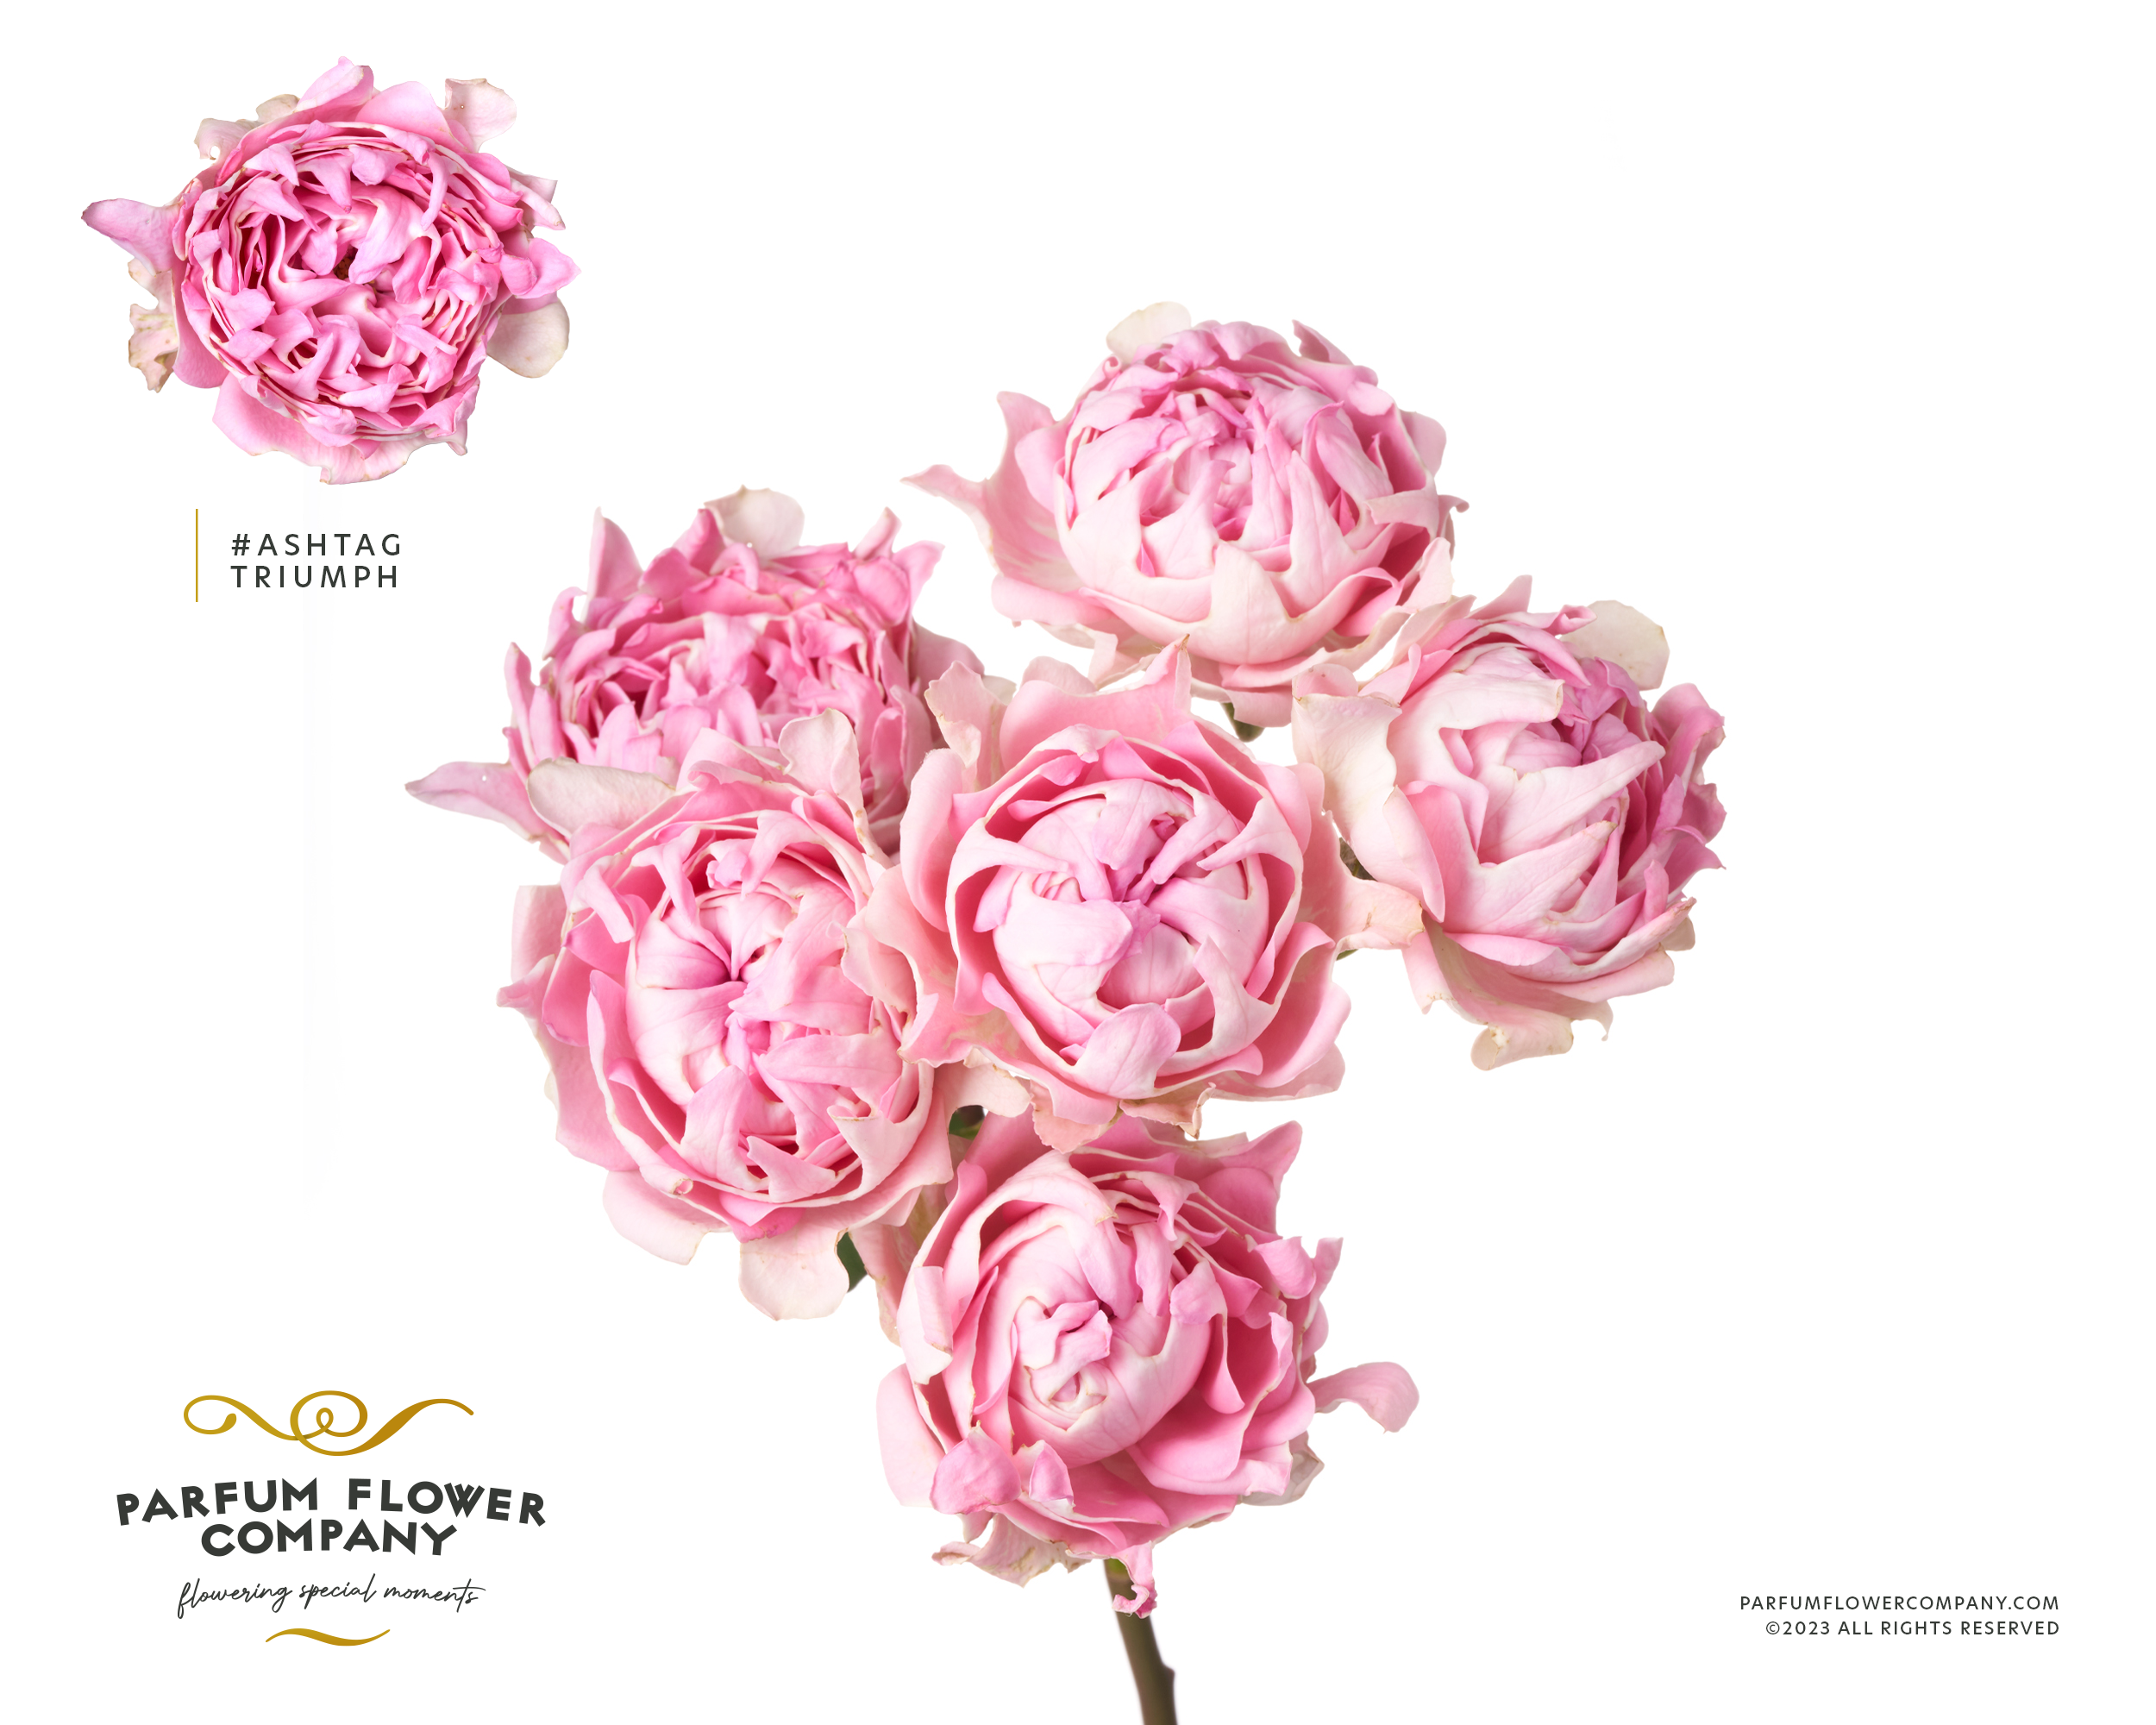 Срезанные цветы оптом Rosa sp hashtags trophy от 12шт из Голландии с доставкой по России